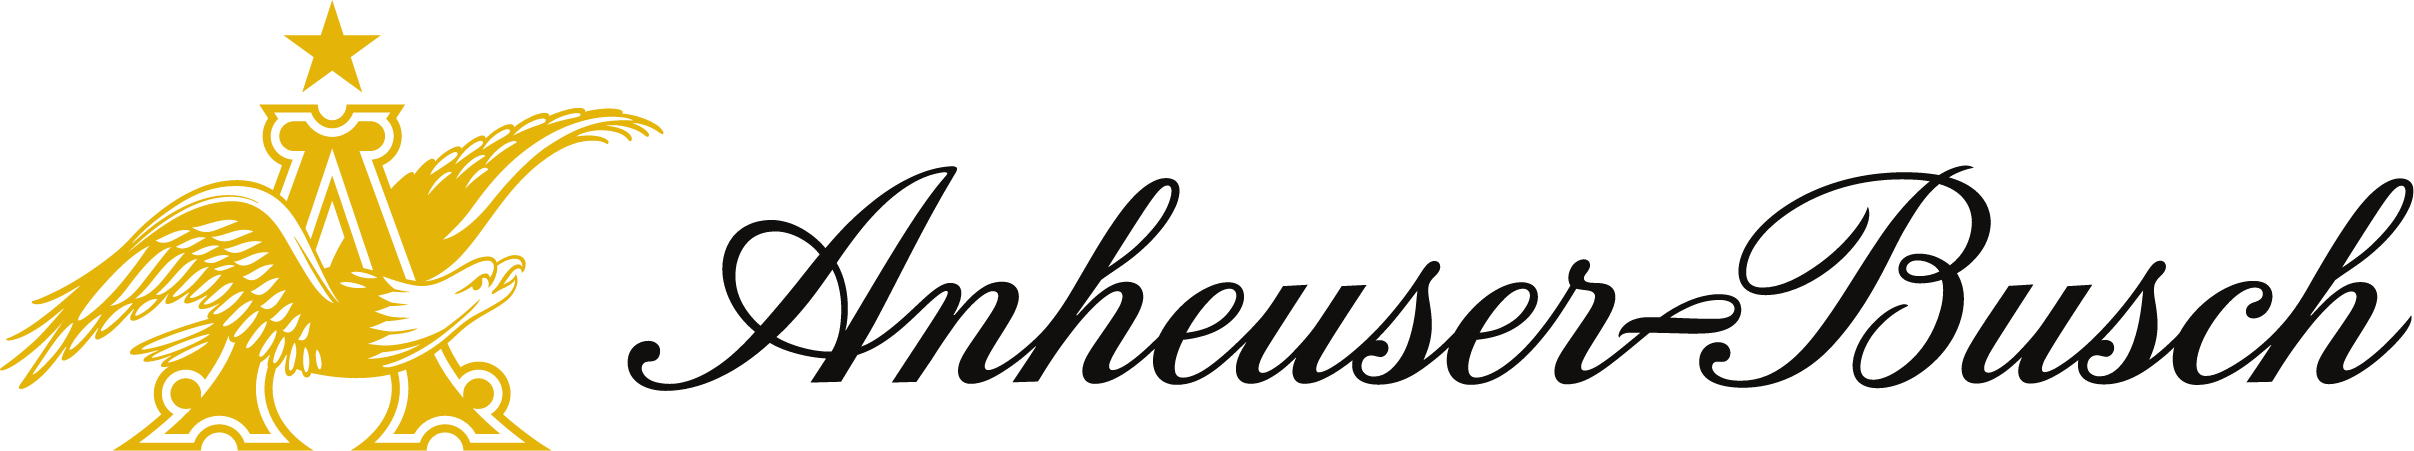 Логотип Anheuser Busch